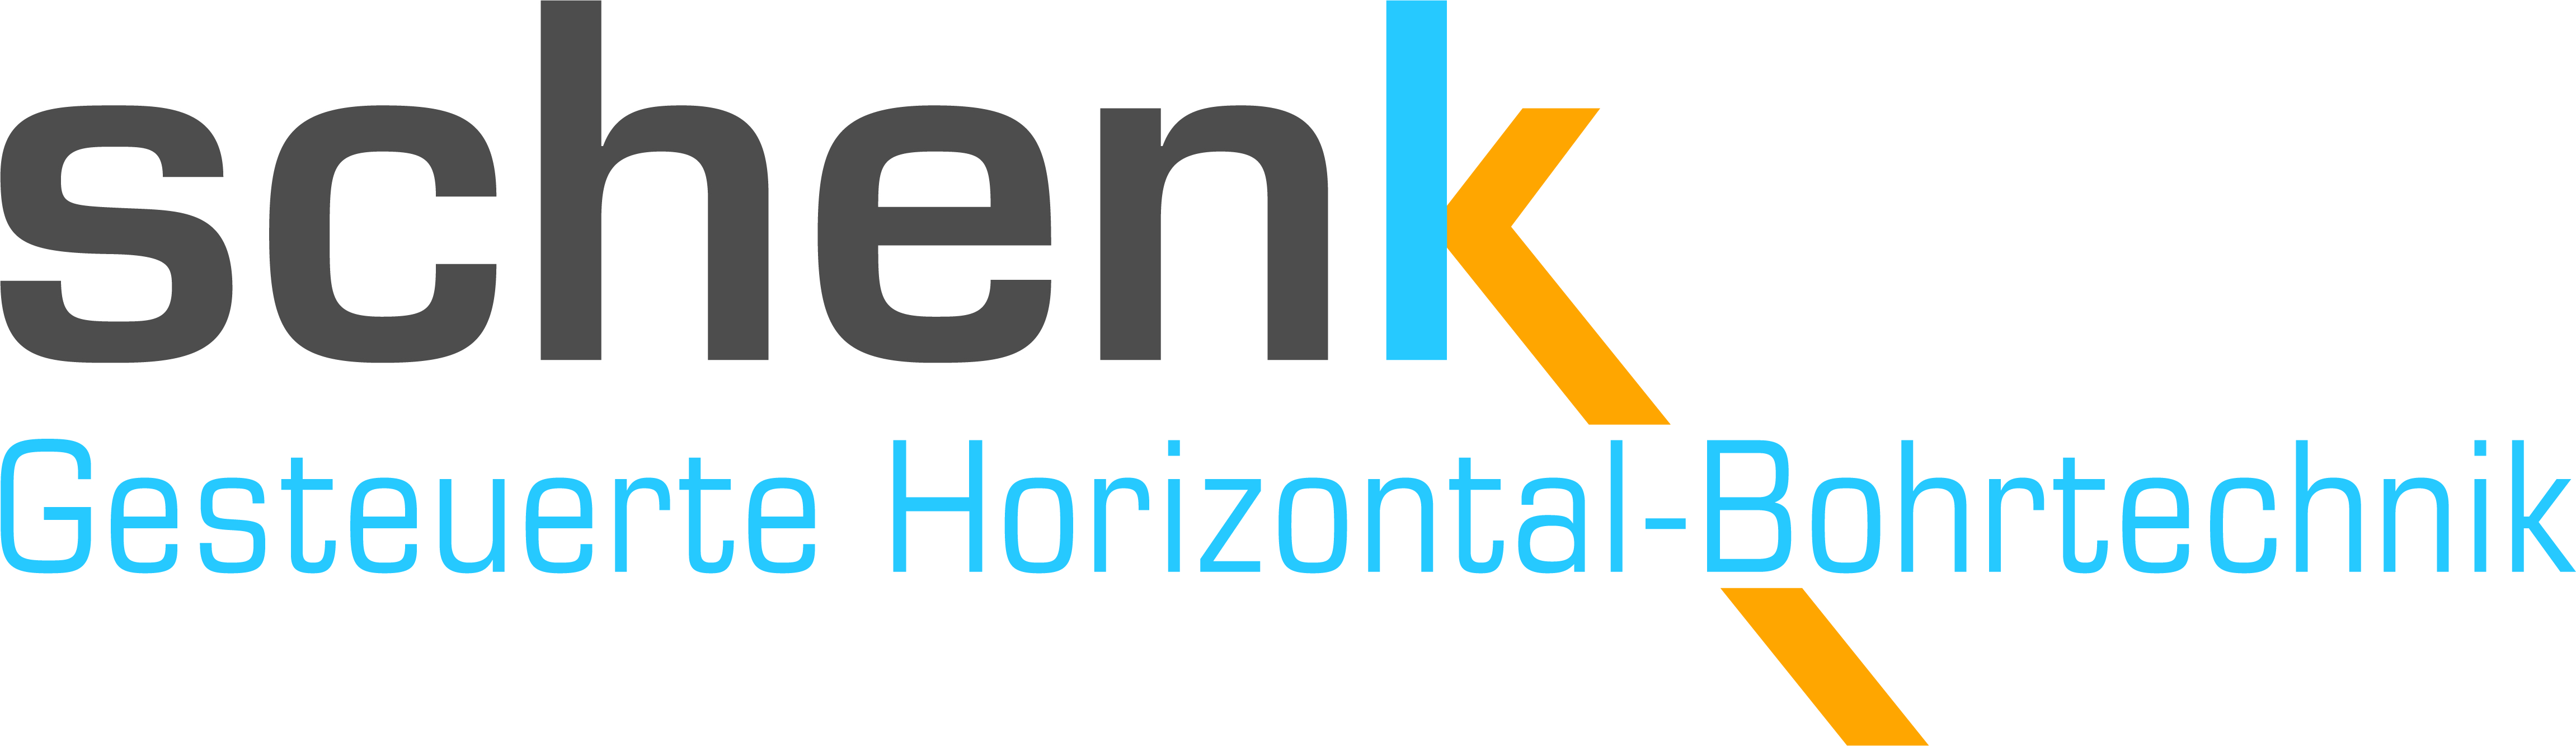 schenk_logo.jpg